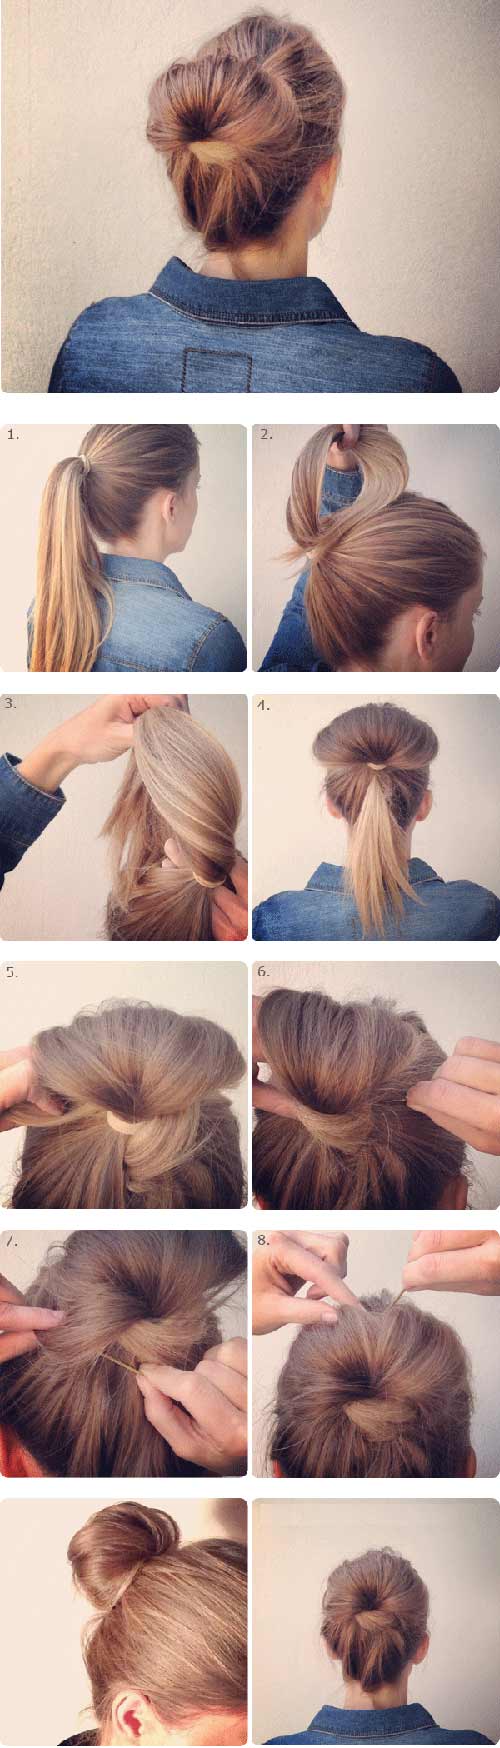 5 kiểu tóc ’cứu’ bạn gái ngày đầu bẩn - 5